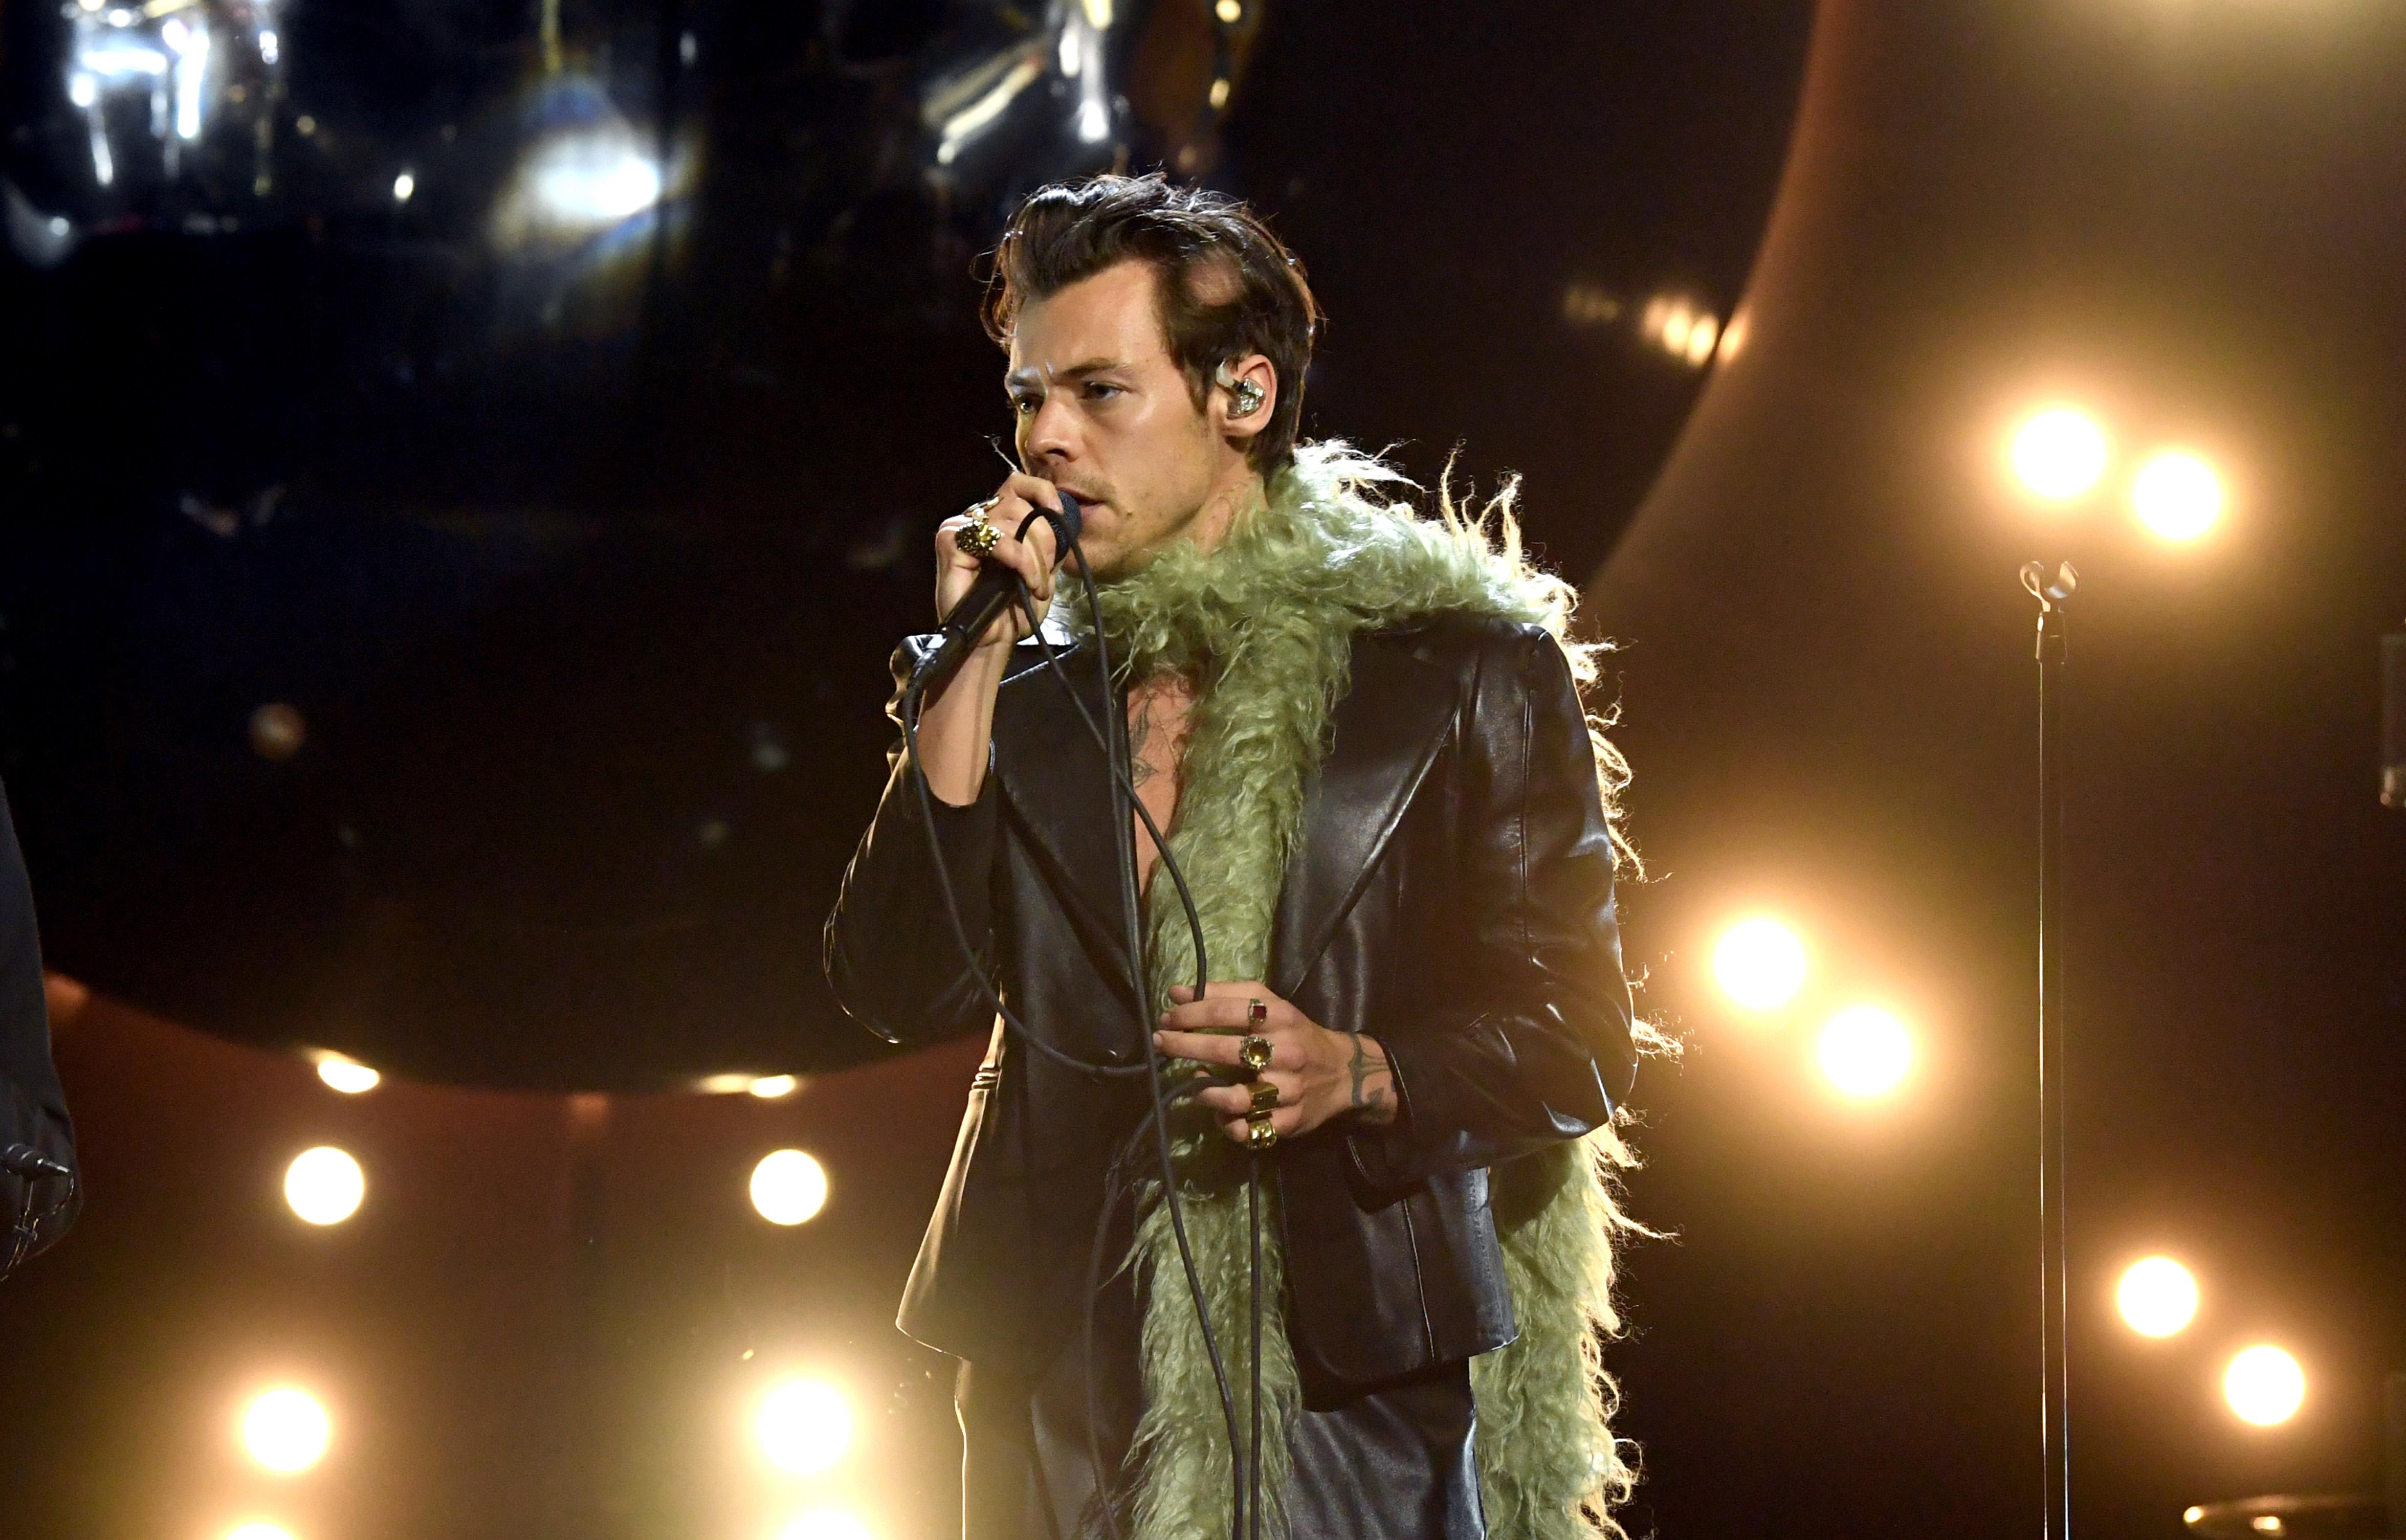 Harry Styles' 63rd Grammy Awards performance wearing an earpiece.